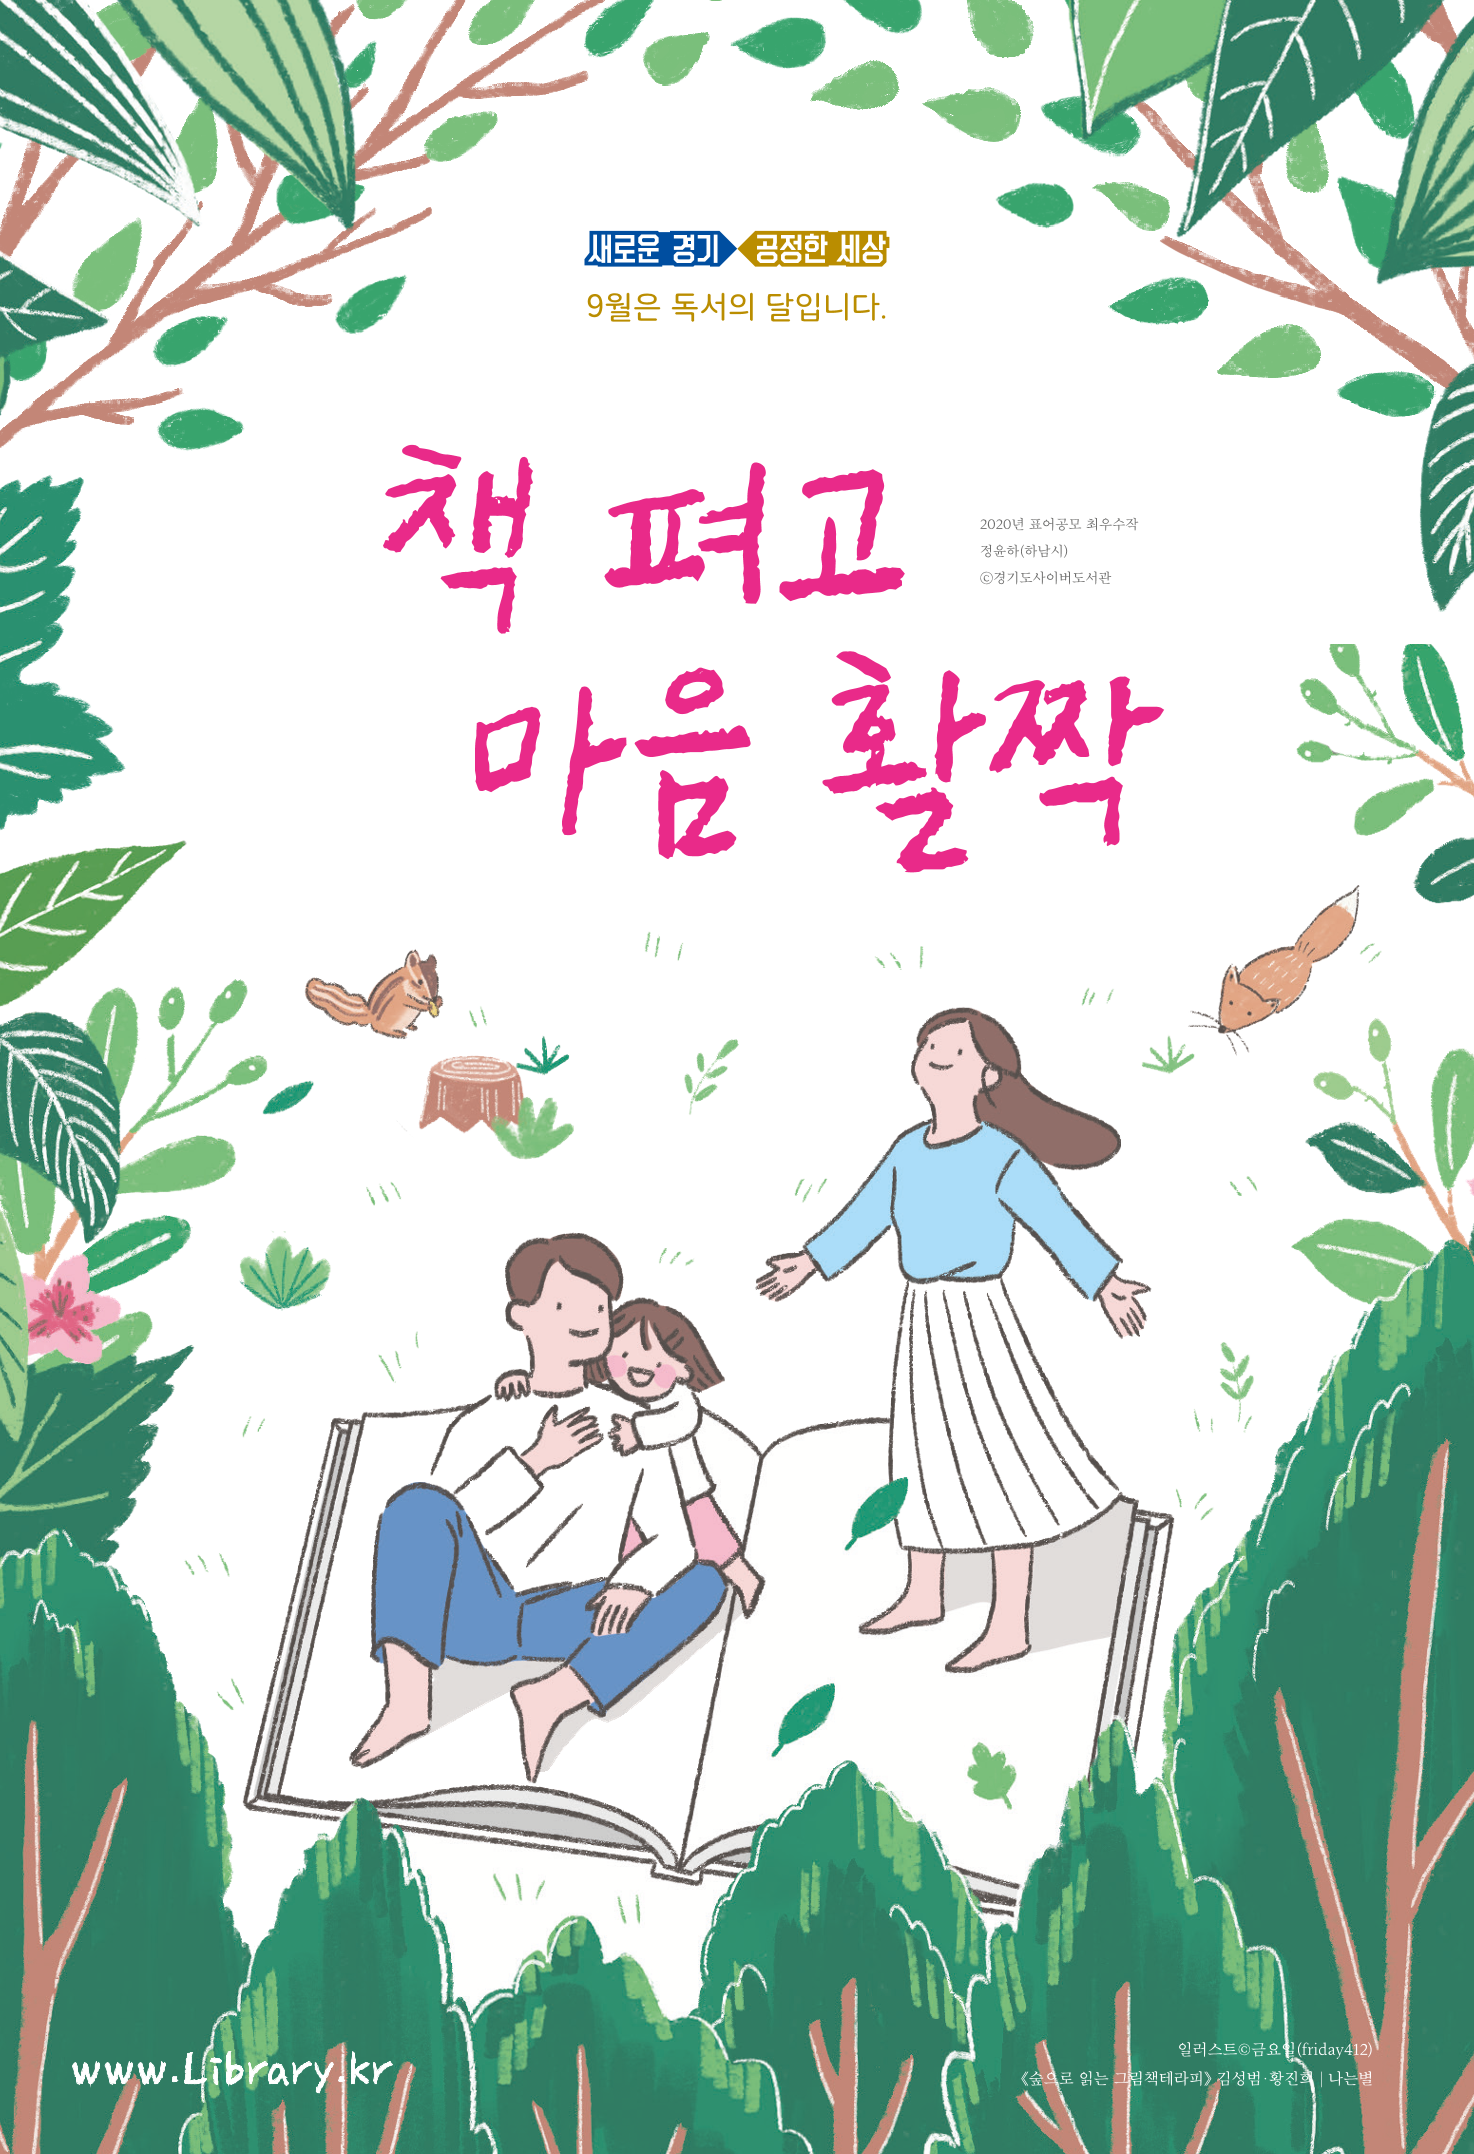 책 펴고 마음 활짝 ; 2020년 경기도사이버도서관 독서의 달 포스터 #2